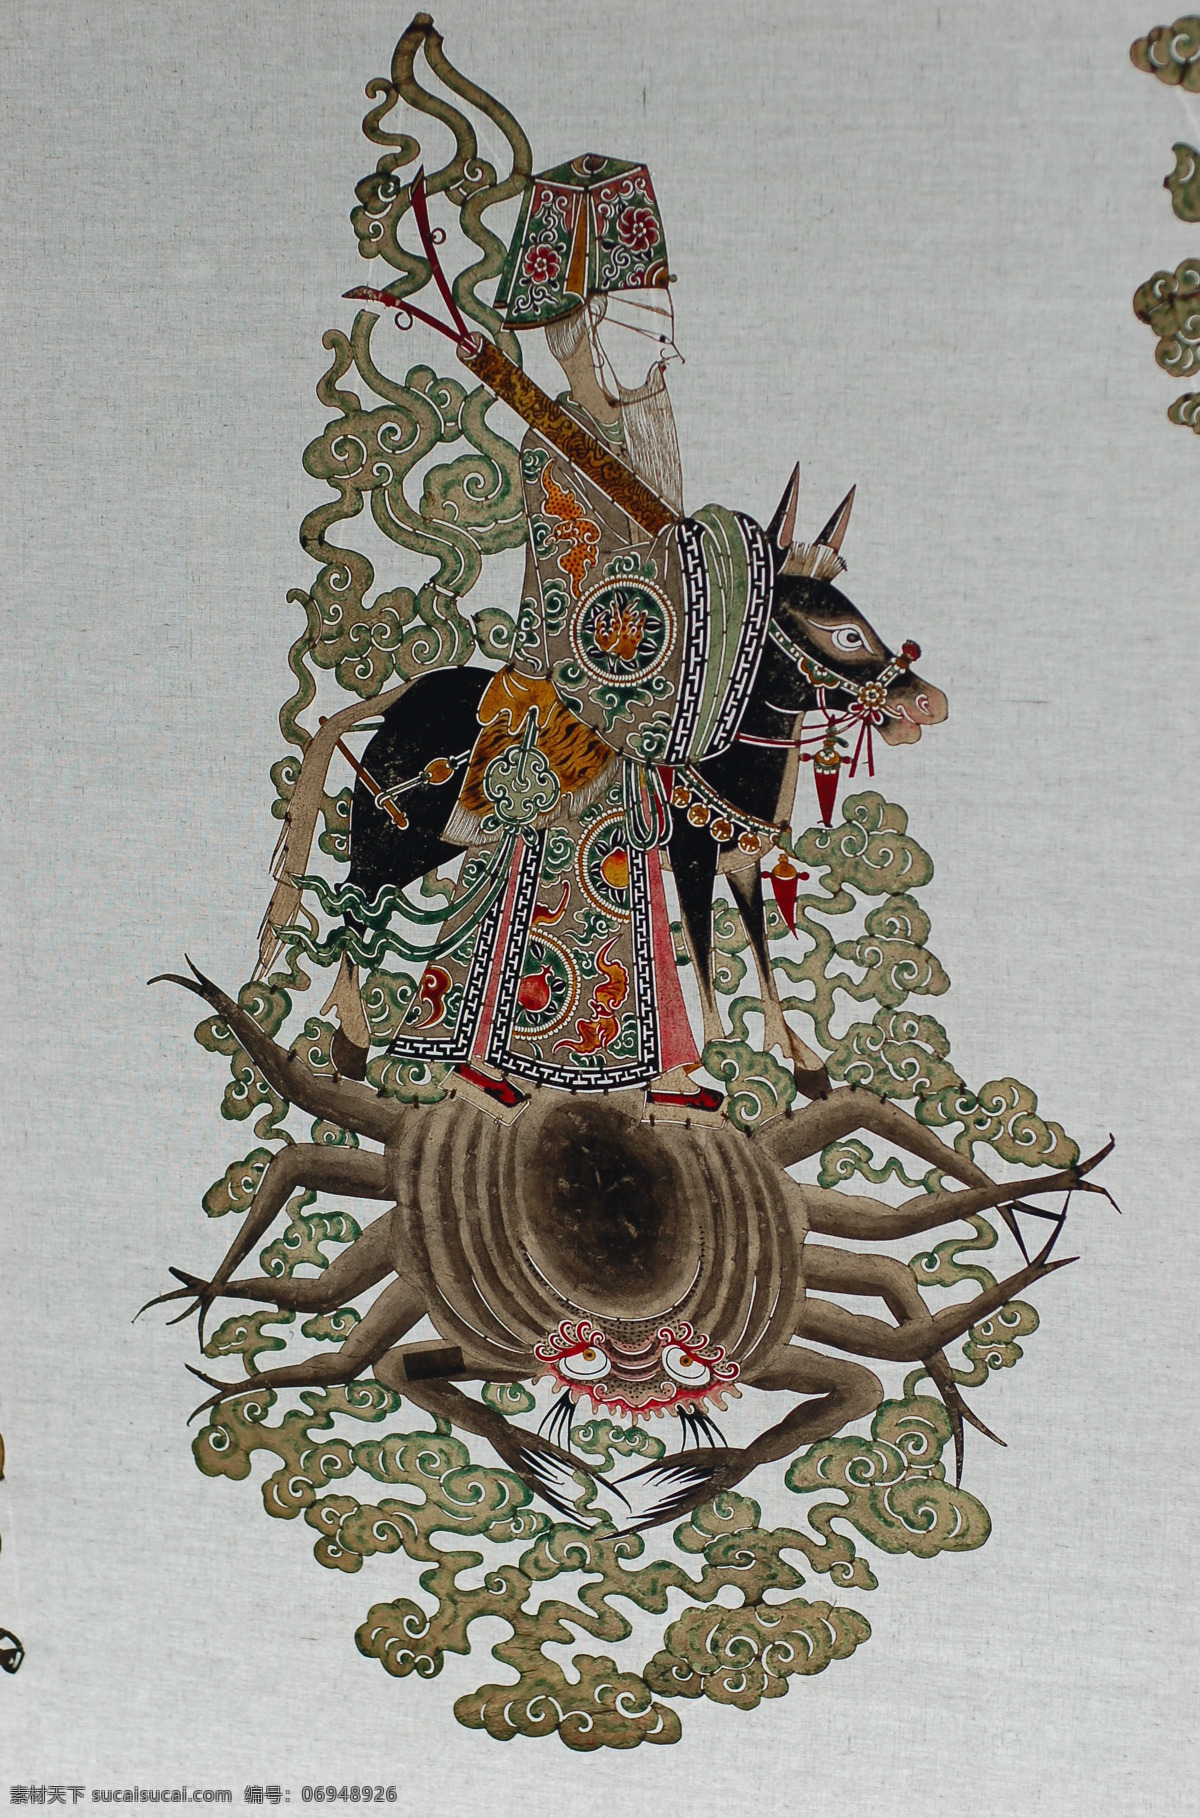 皮影 国画 人物画 传统 民族 驴皮 神话 传说 传统文化 文化艺术